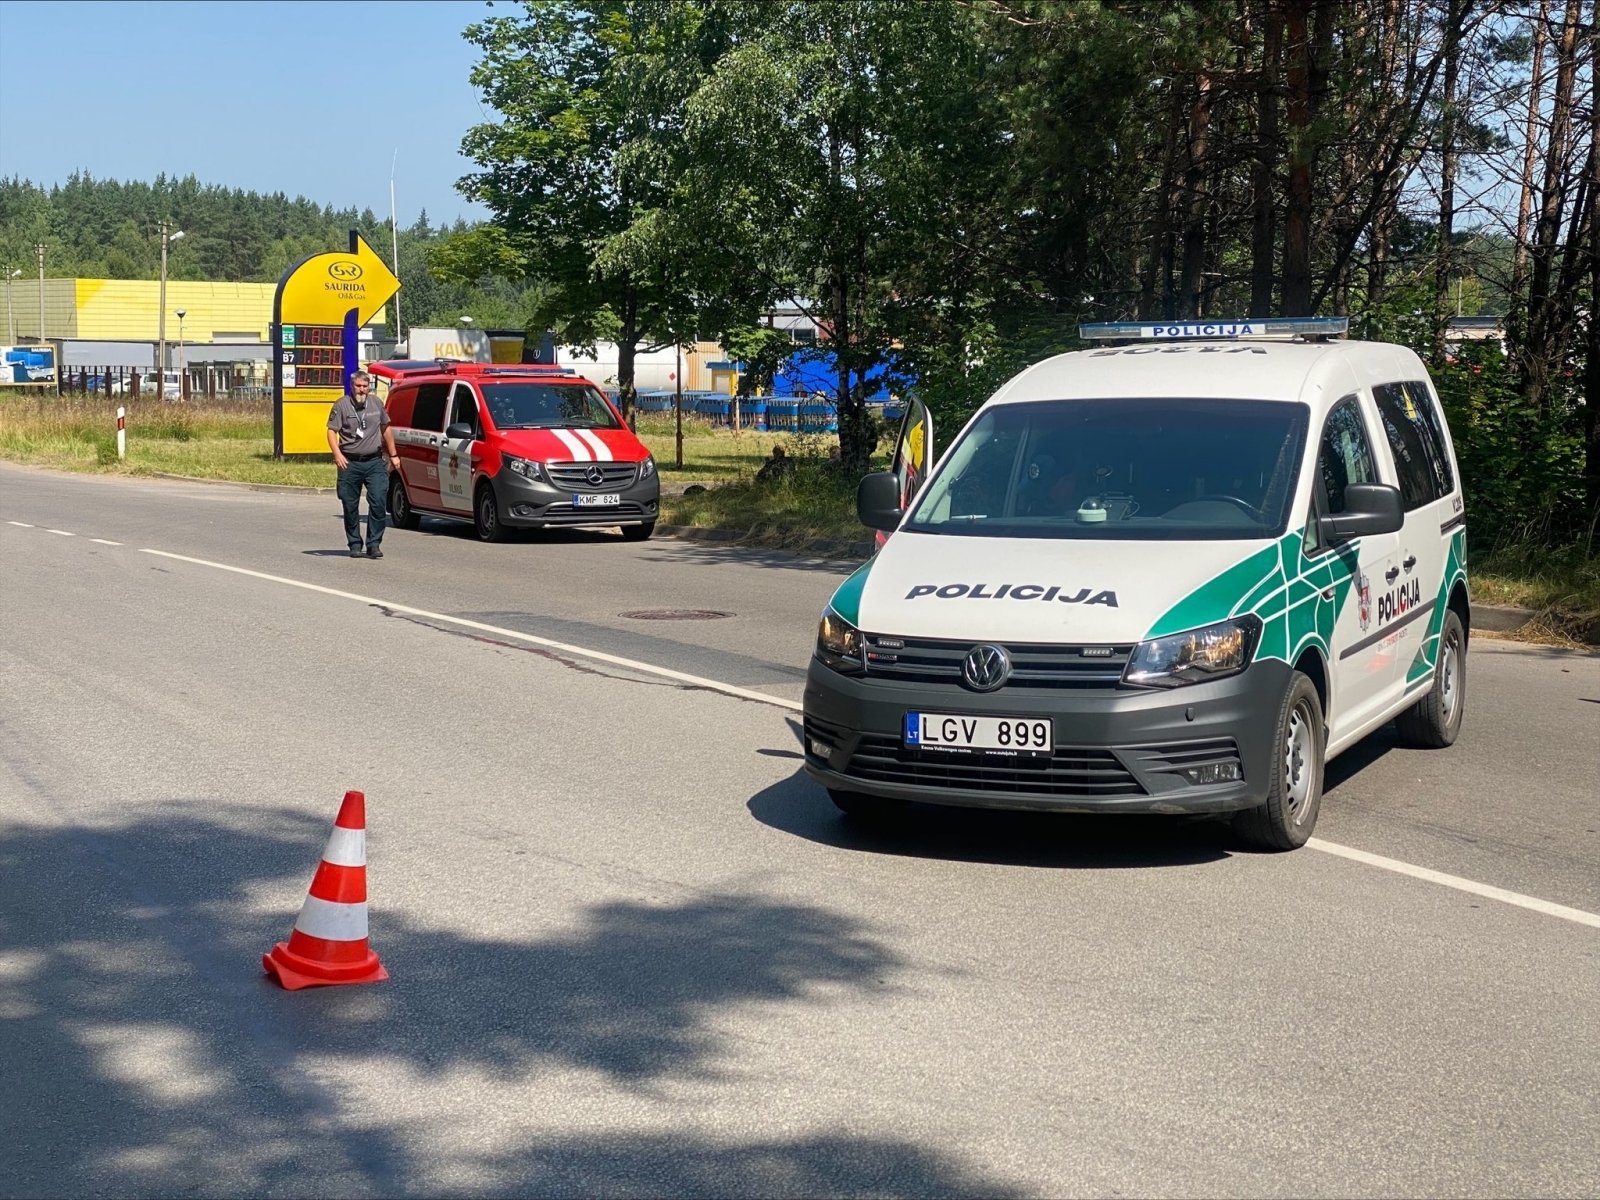 Degalinėje Vilniuje įvyko dujų nuotėkis: apsaugos zona plečiama – evakuojami žmonės 200 metrų spinduliu gedimo pašalinti nepavyko, eismas uždarytas